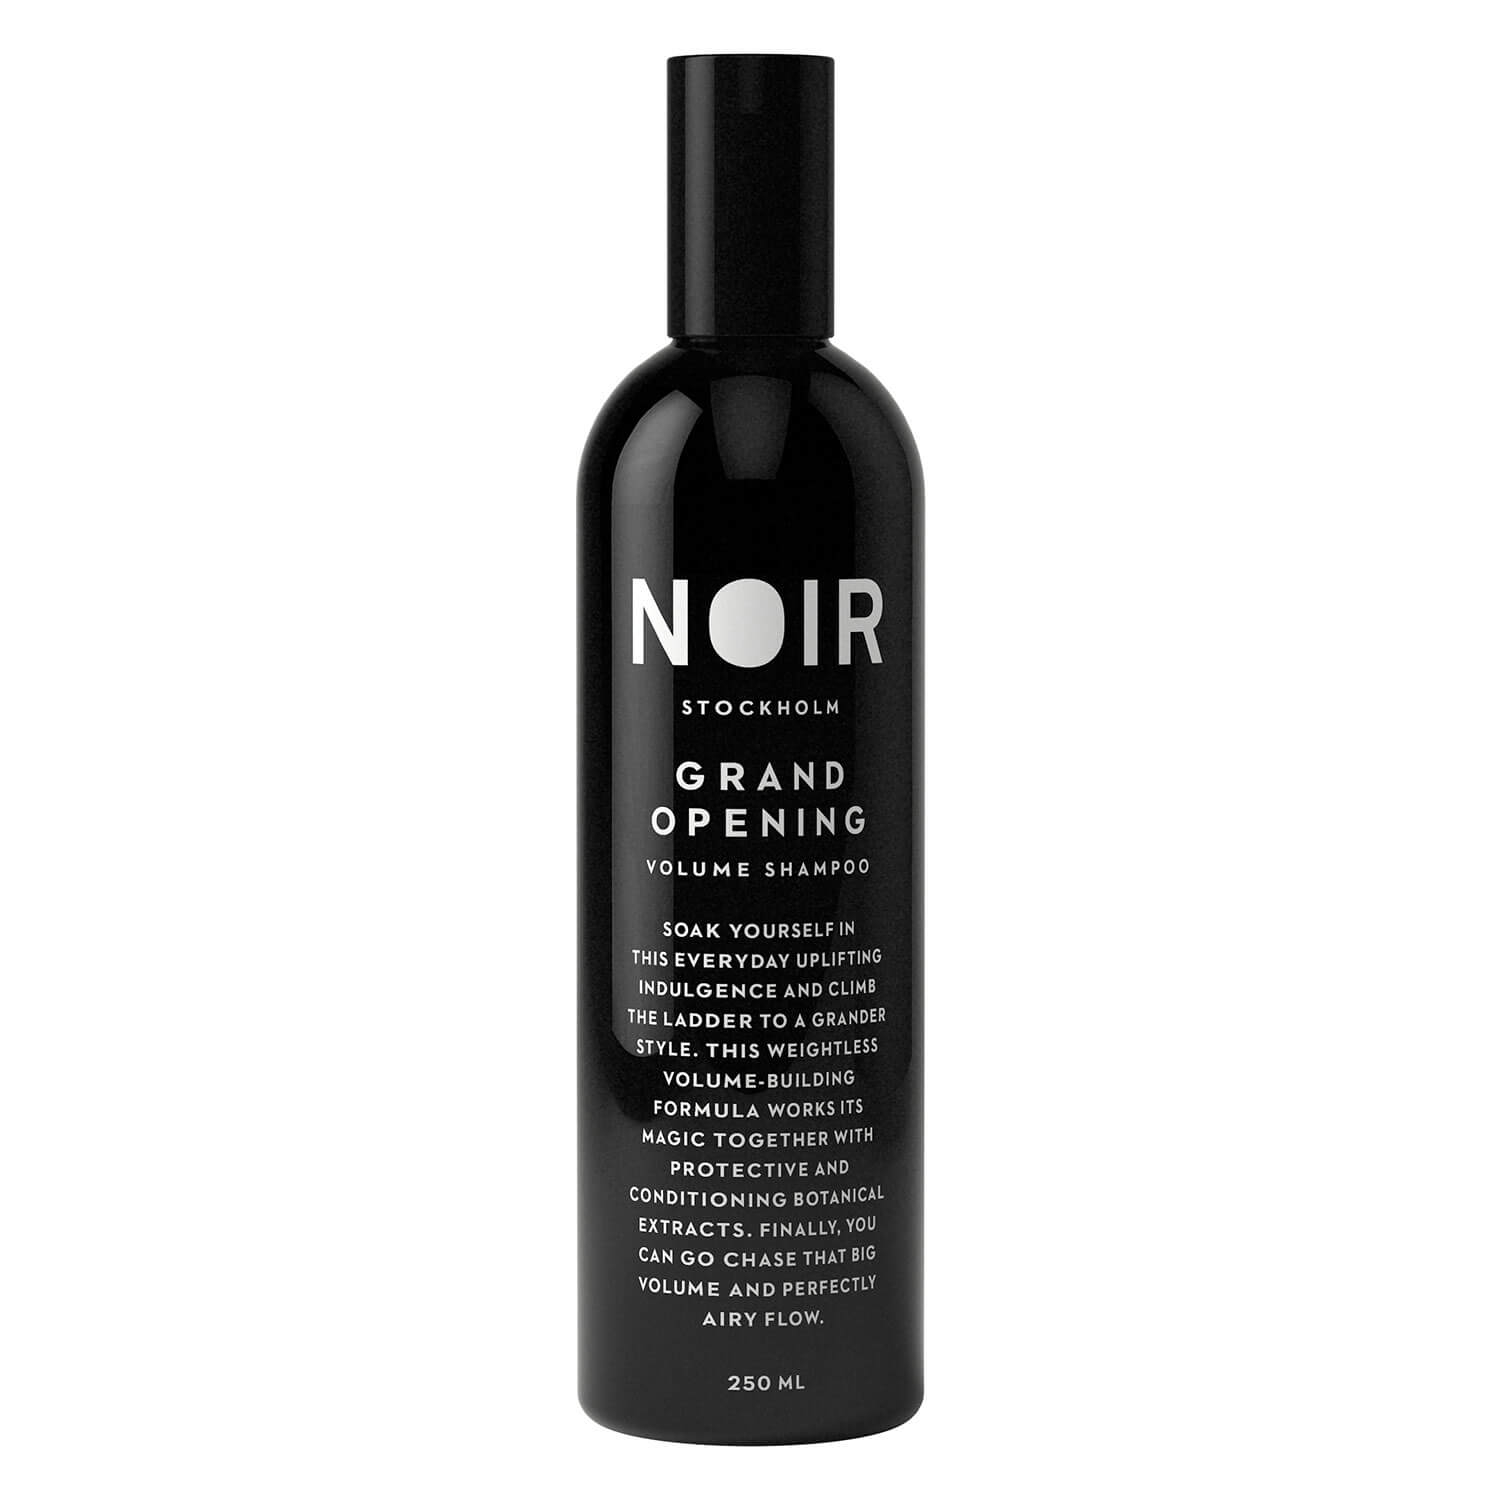 Produktbild von NOIR - Grand Opening Volume Shampoo